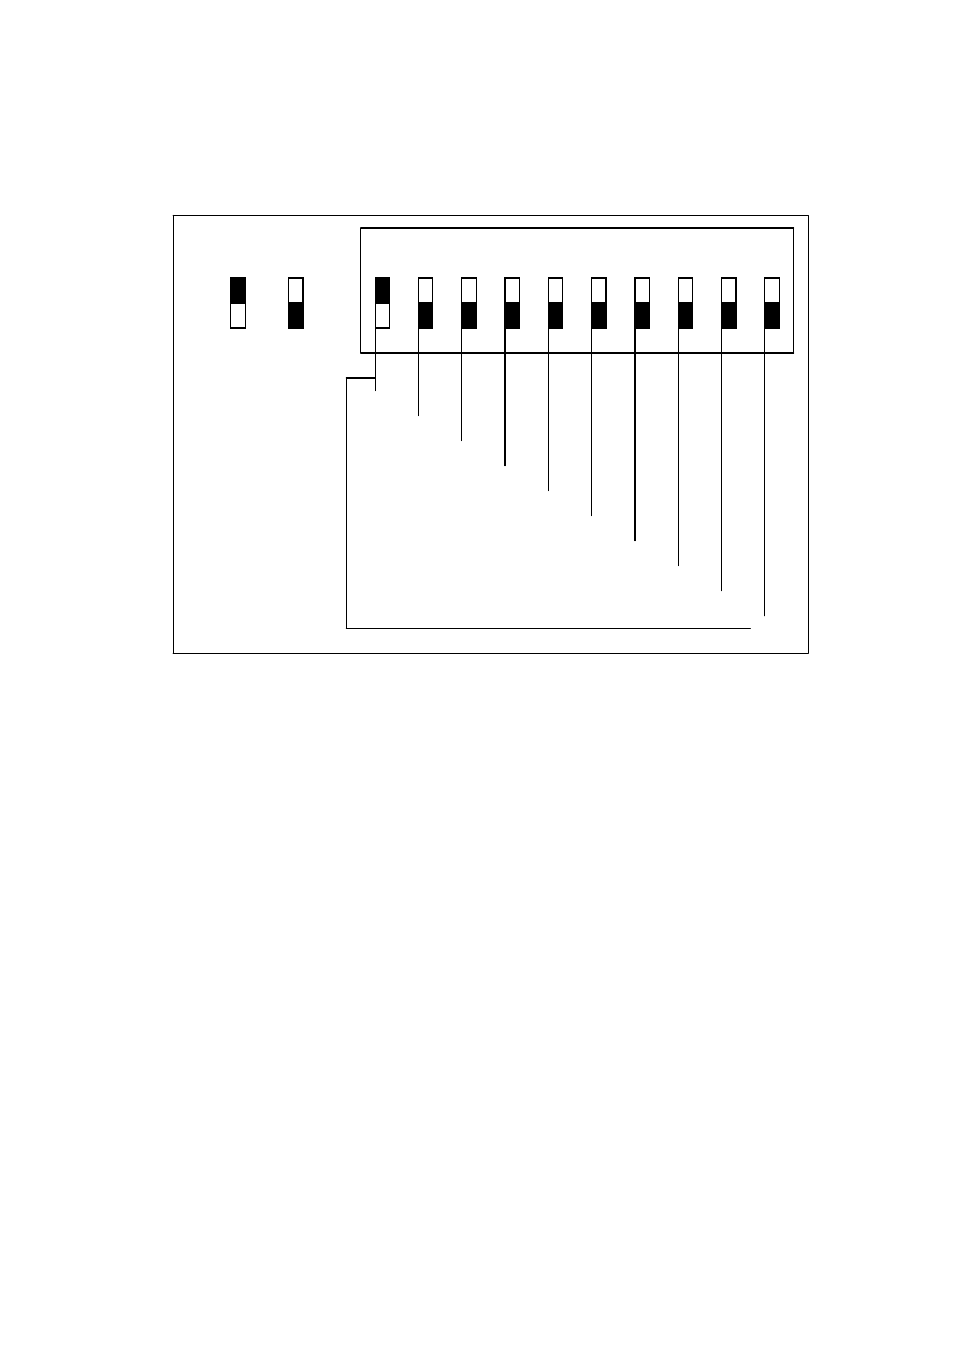 MBT Lighting LEDPAR96 User Manual | Page 2 / 2